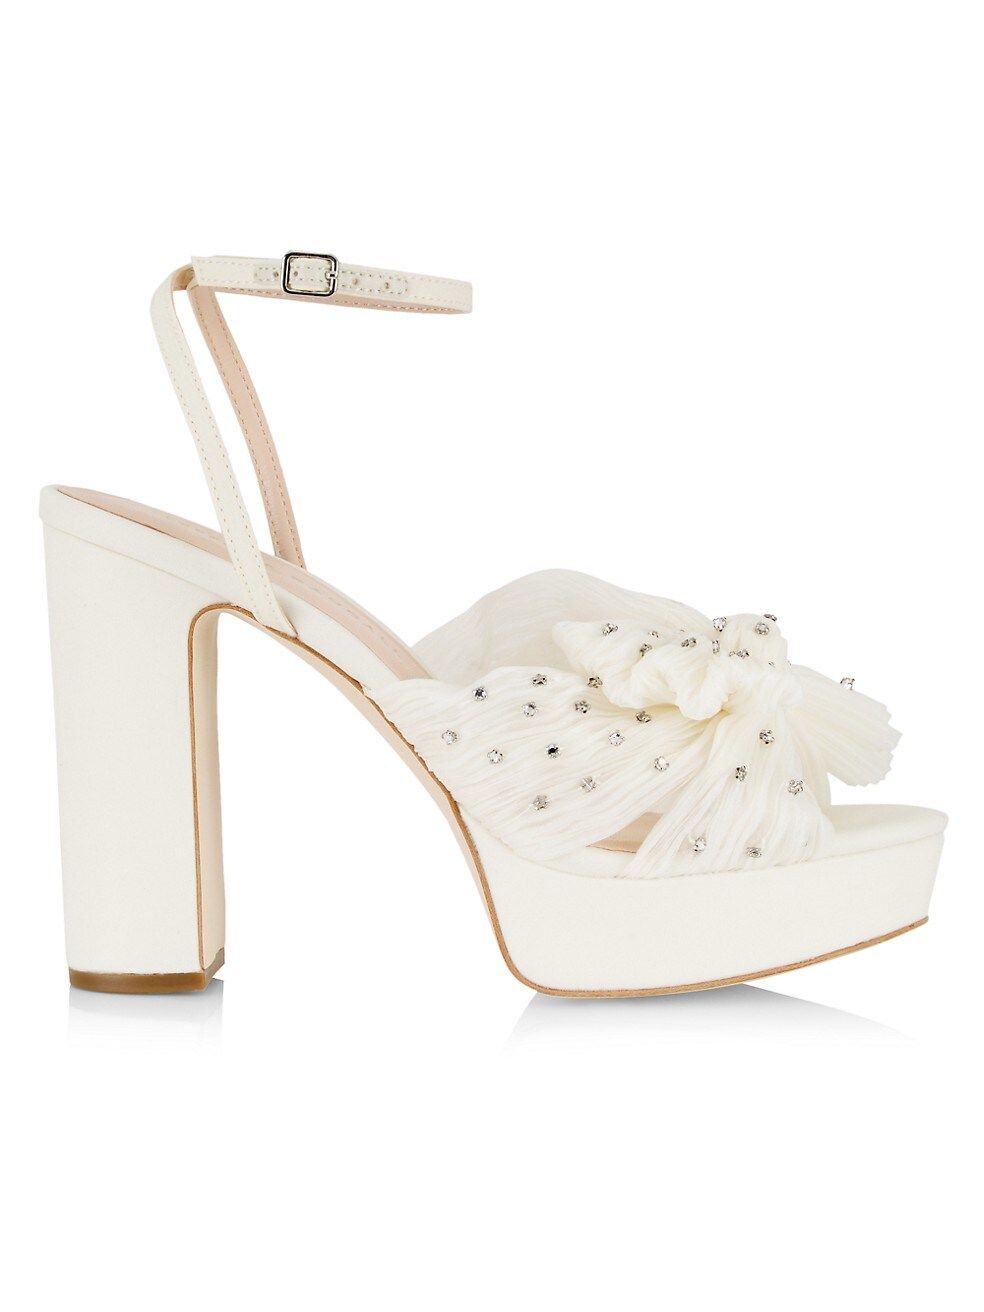 Loeffler Randall Natalia Crystal-Embellished Bow Platform Sandals | Saks Fifth Avenue